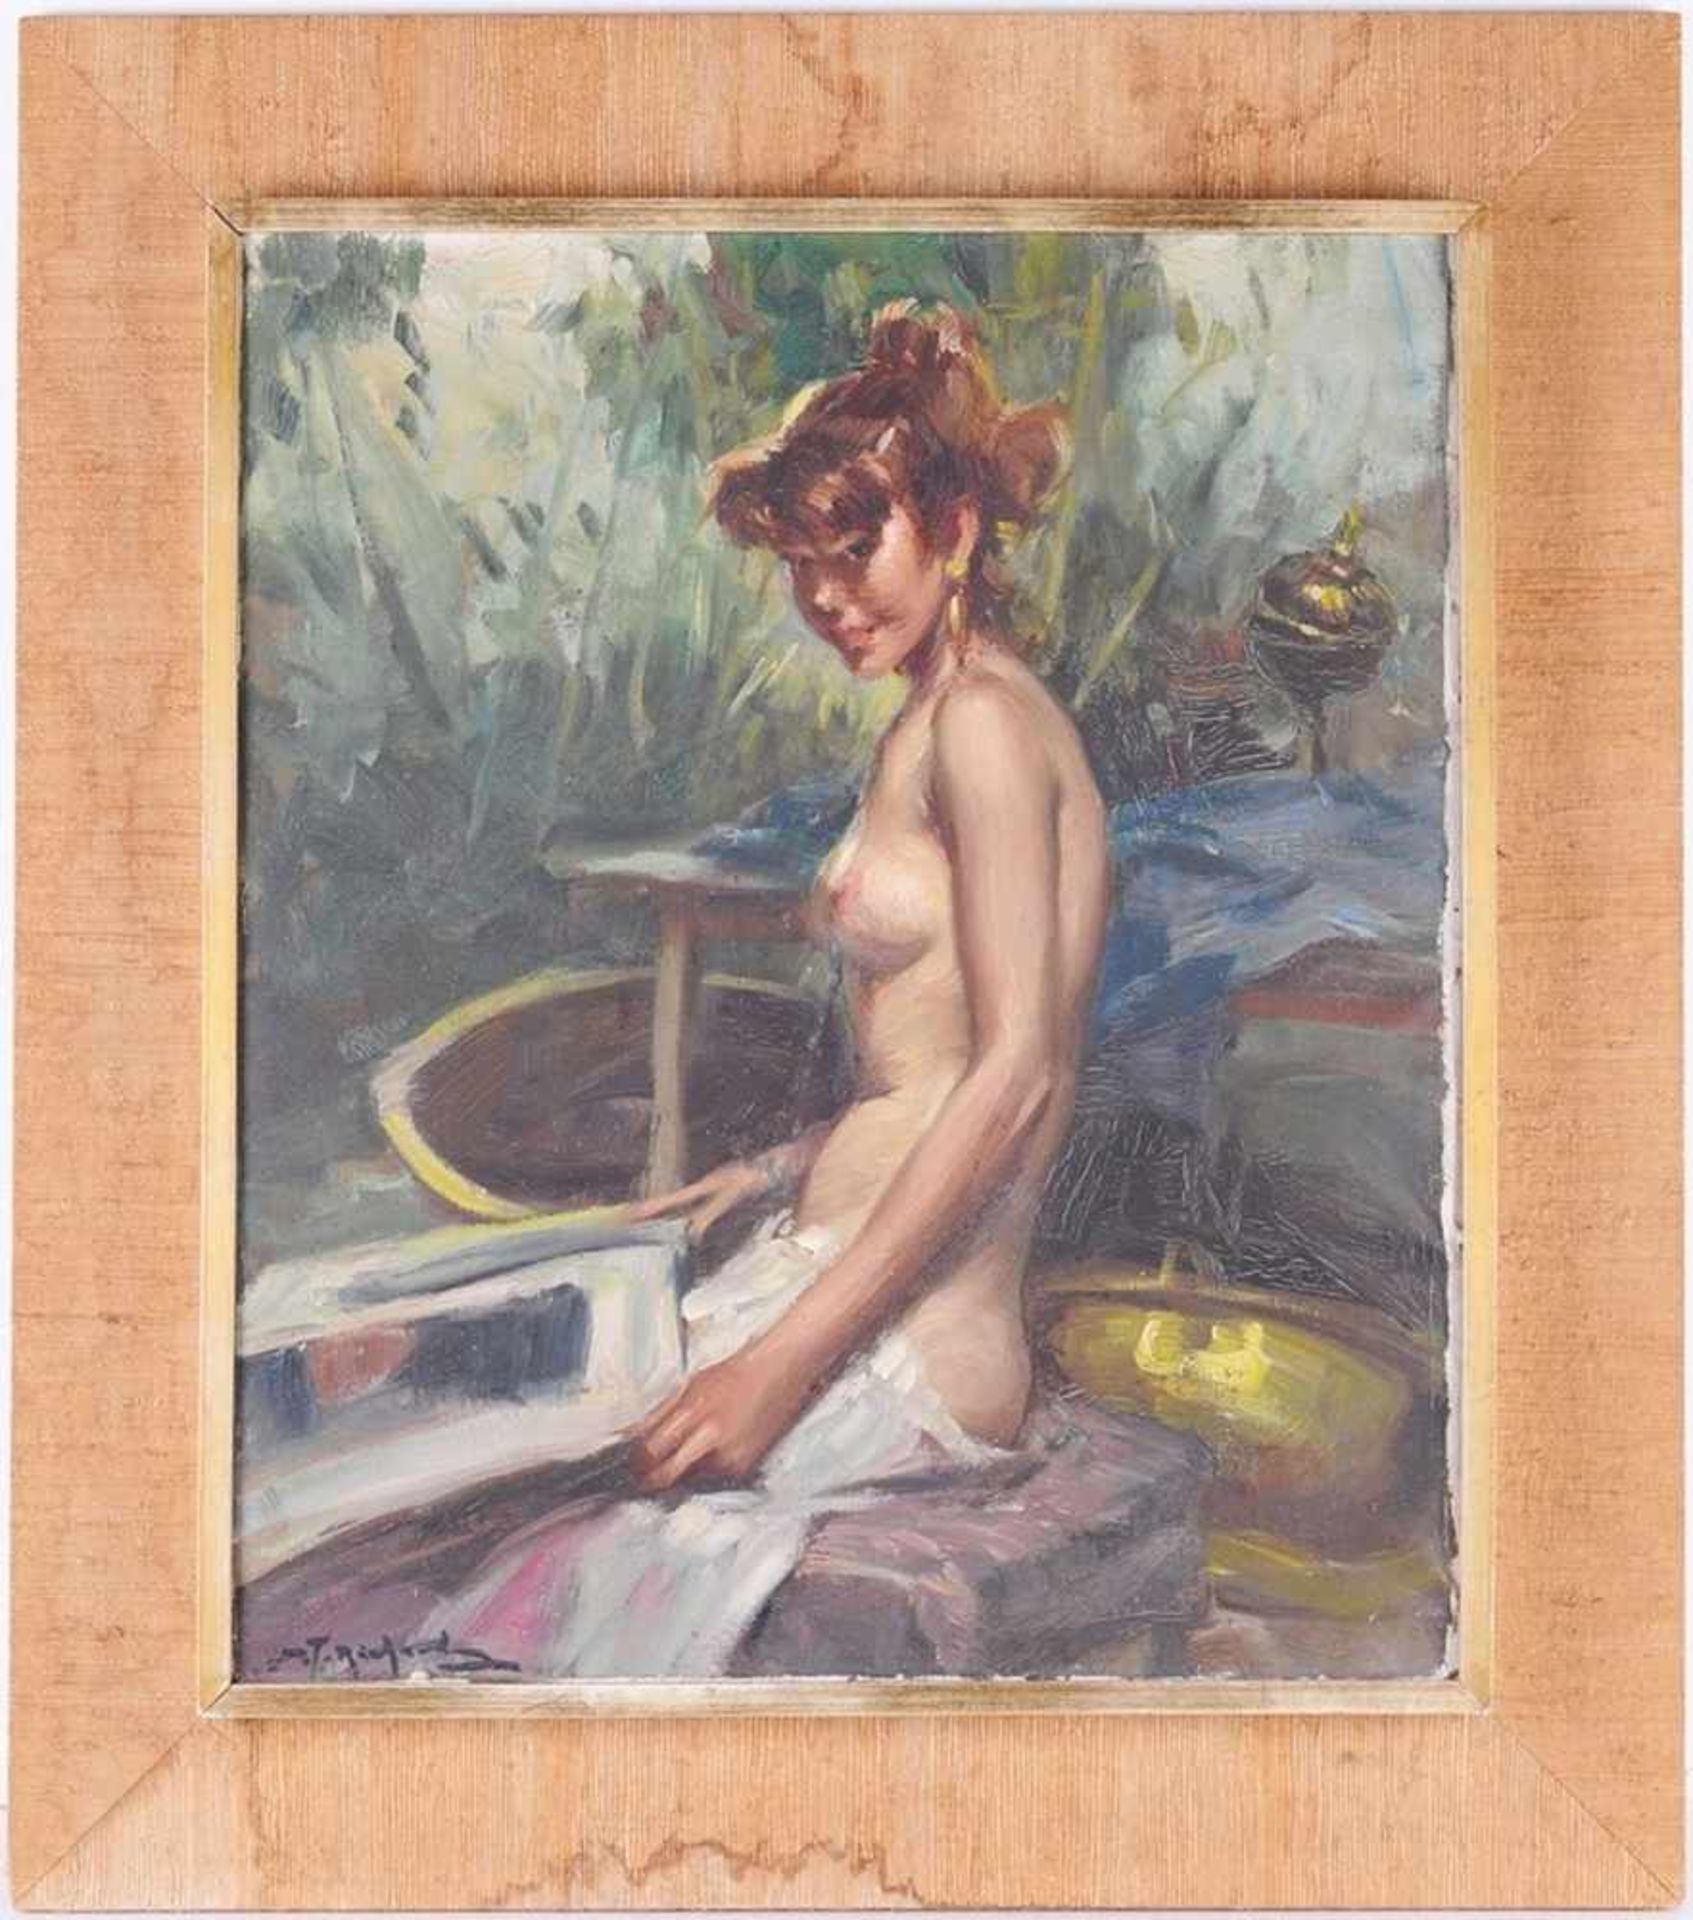 Durando Togo, Richard (Argentinischer Maler, geb. 1910 in Buenos Aires) Öl/Lwd. Sitzender weiblicher